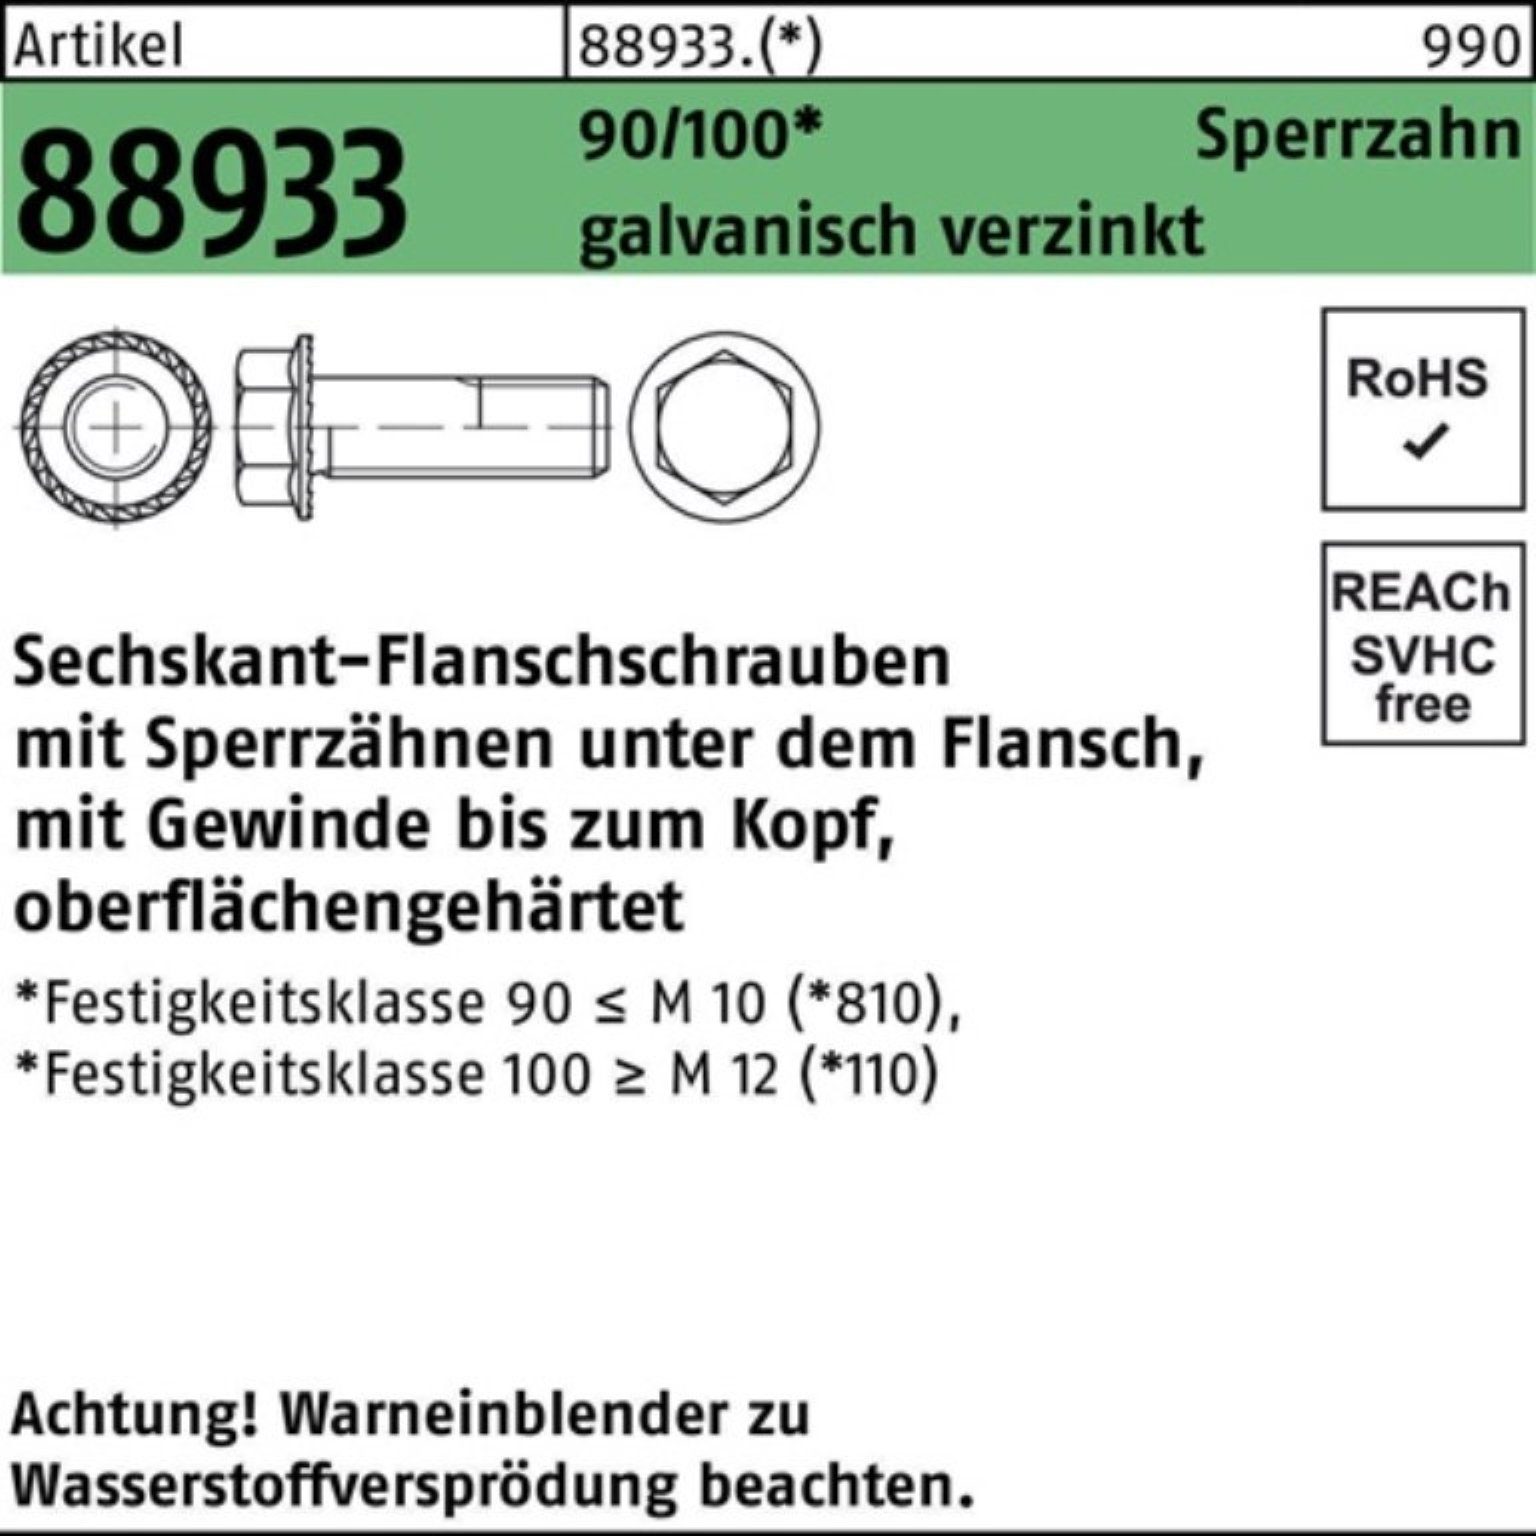 Pack 90/100 Sechskantflanschschraube VG M6x16 Reyher 88933 500er Sperrz. Schraube ga R